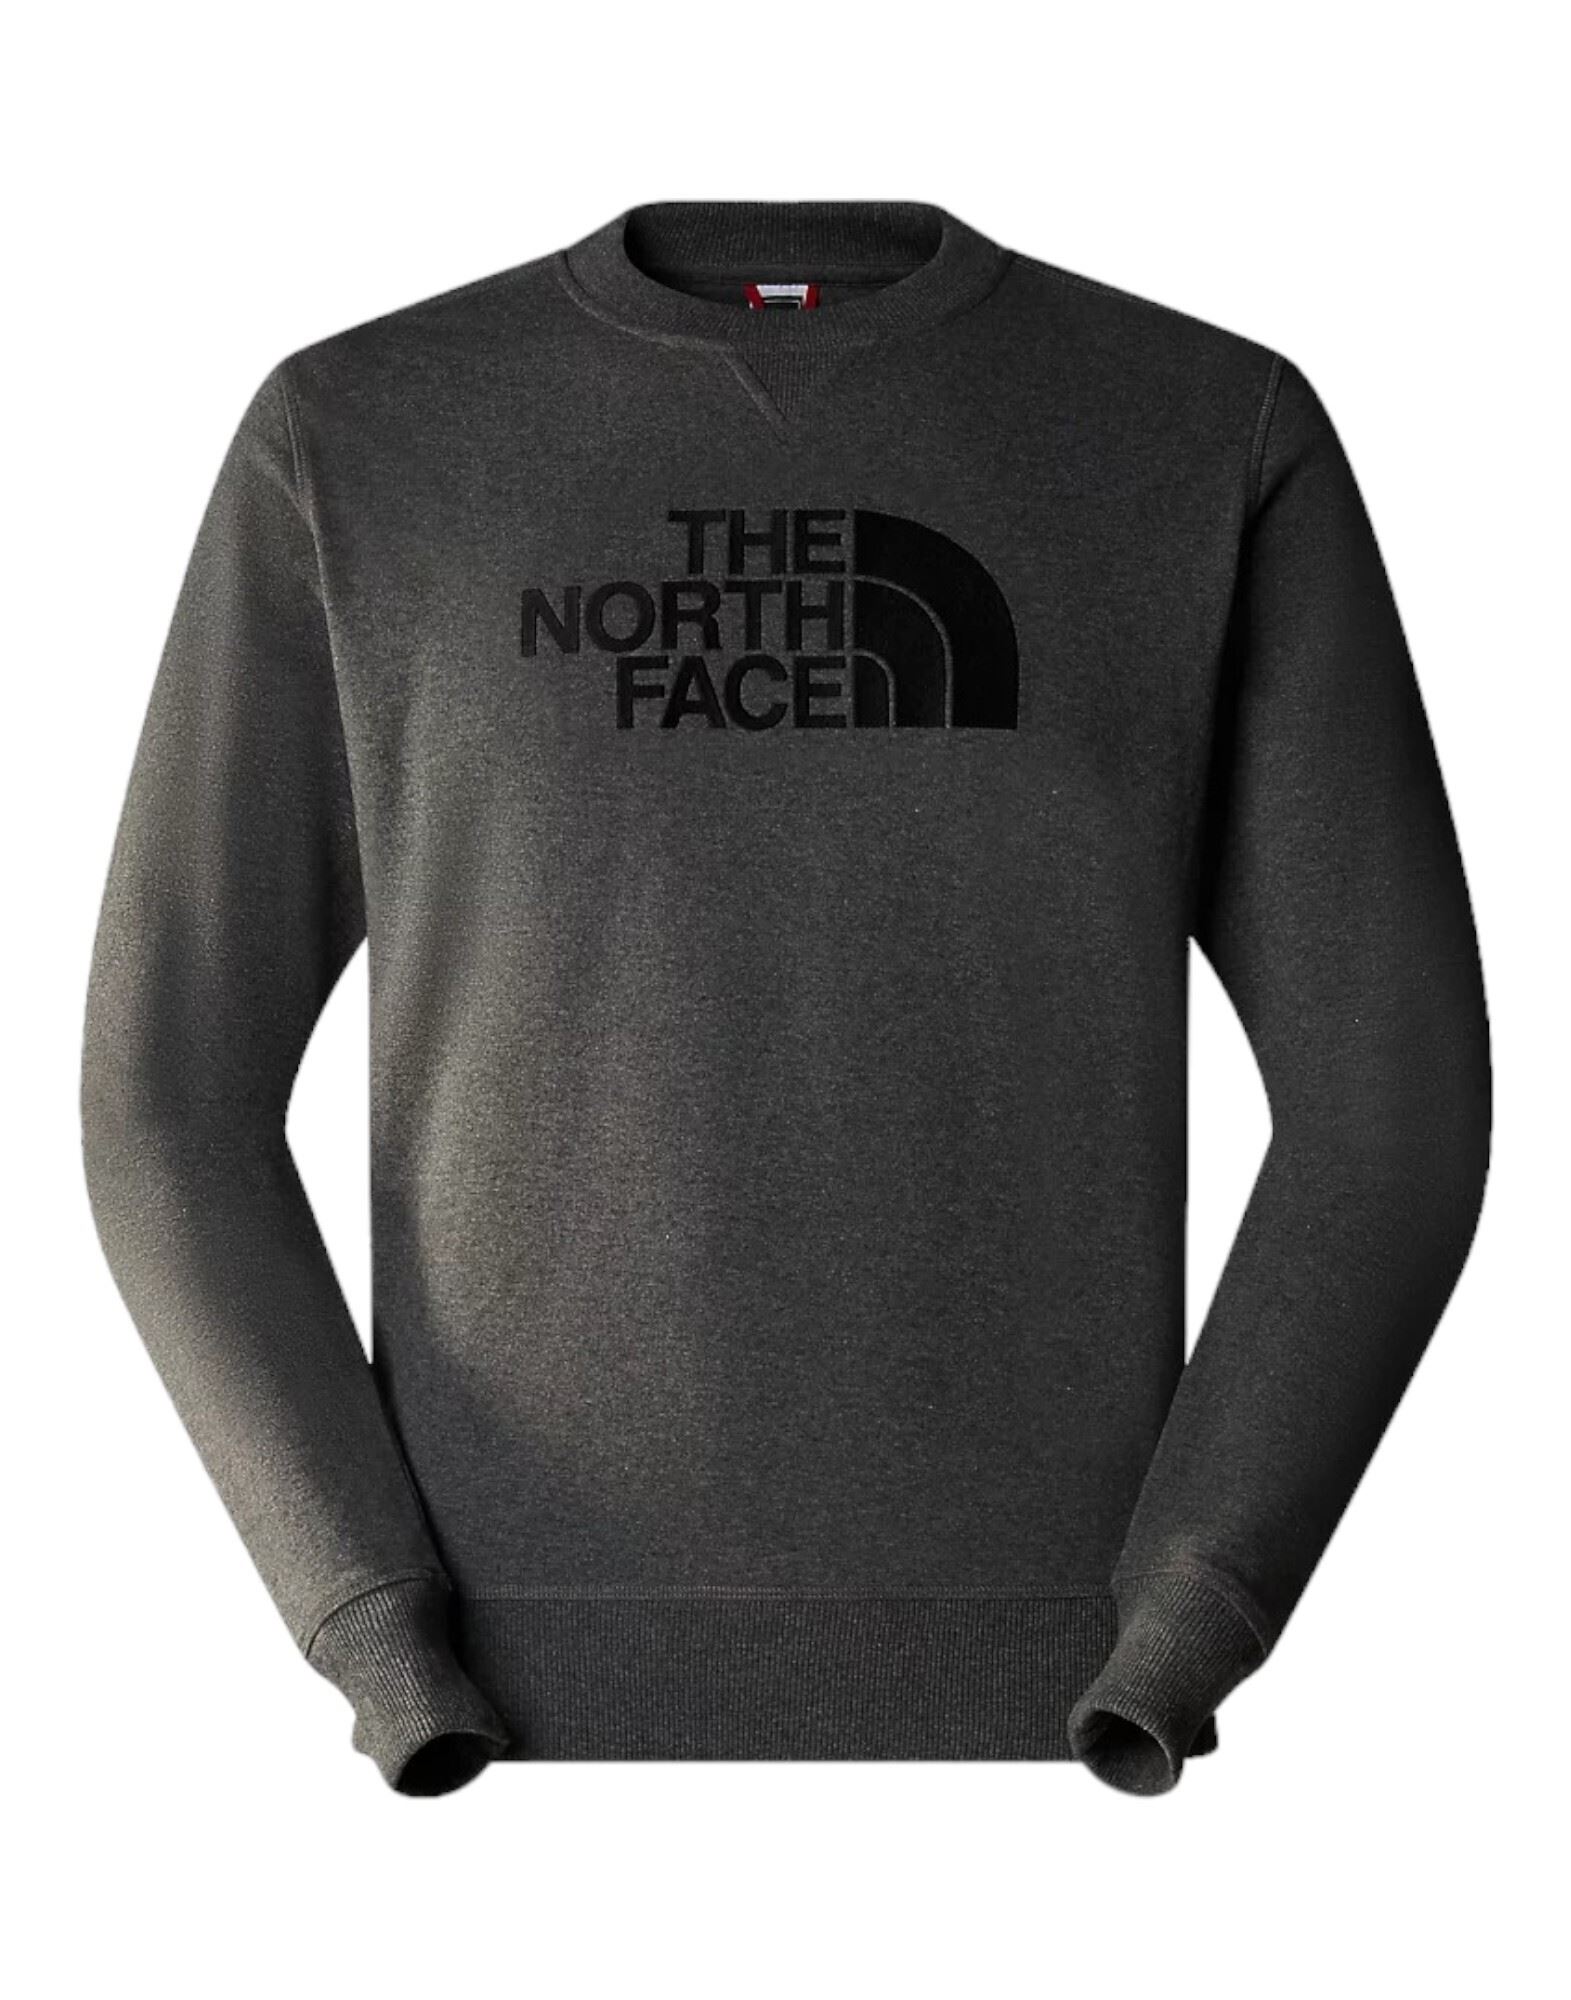 THE NORTH FACE Sweatshirt Herren Grau von THE NORTH FACE